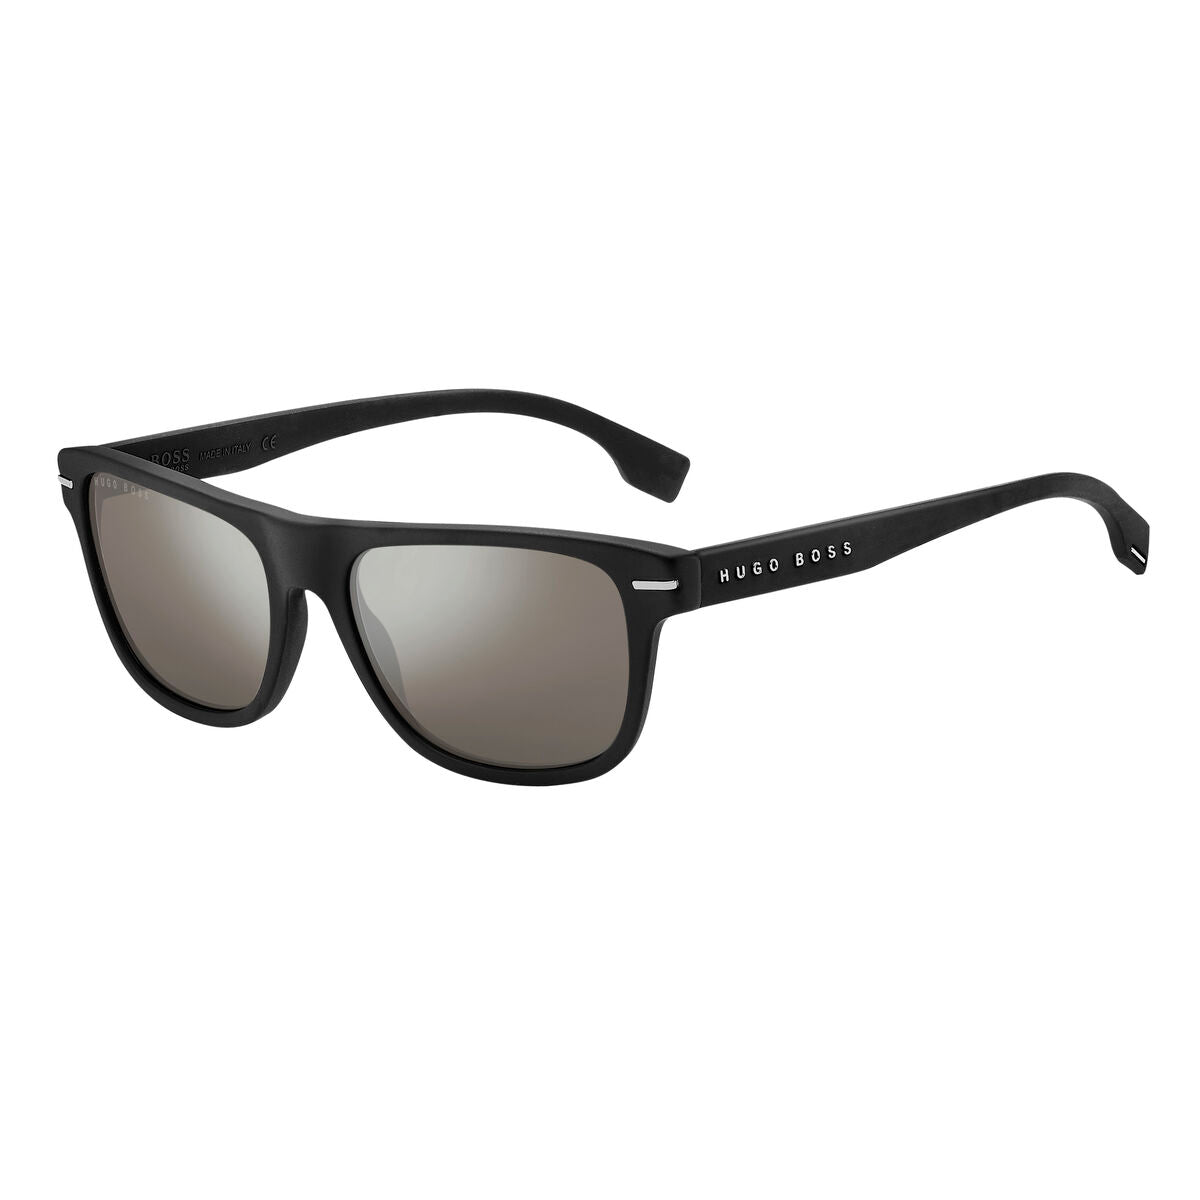 Men's Sunglasses Hugo Boss BOSS-1322-S-124-T4